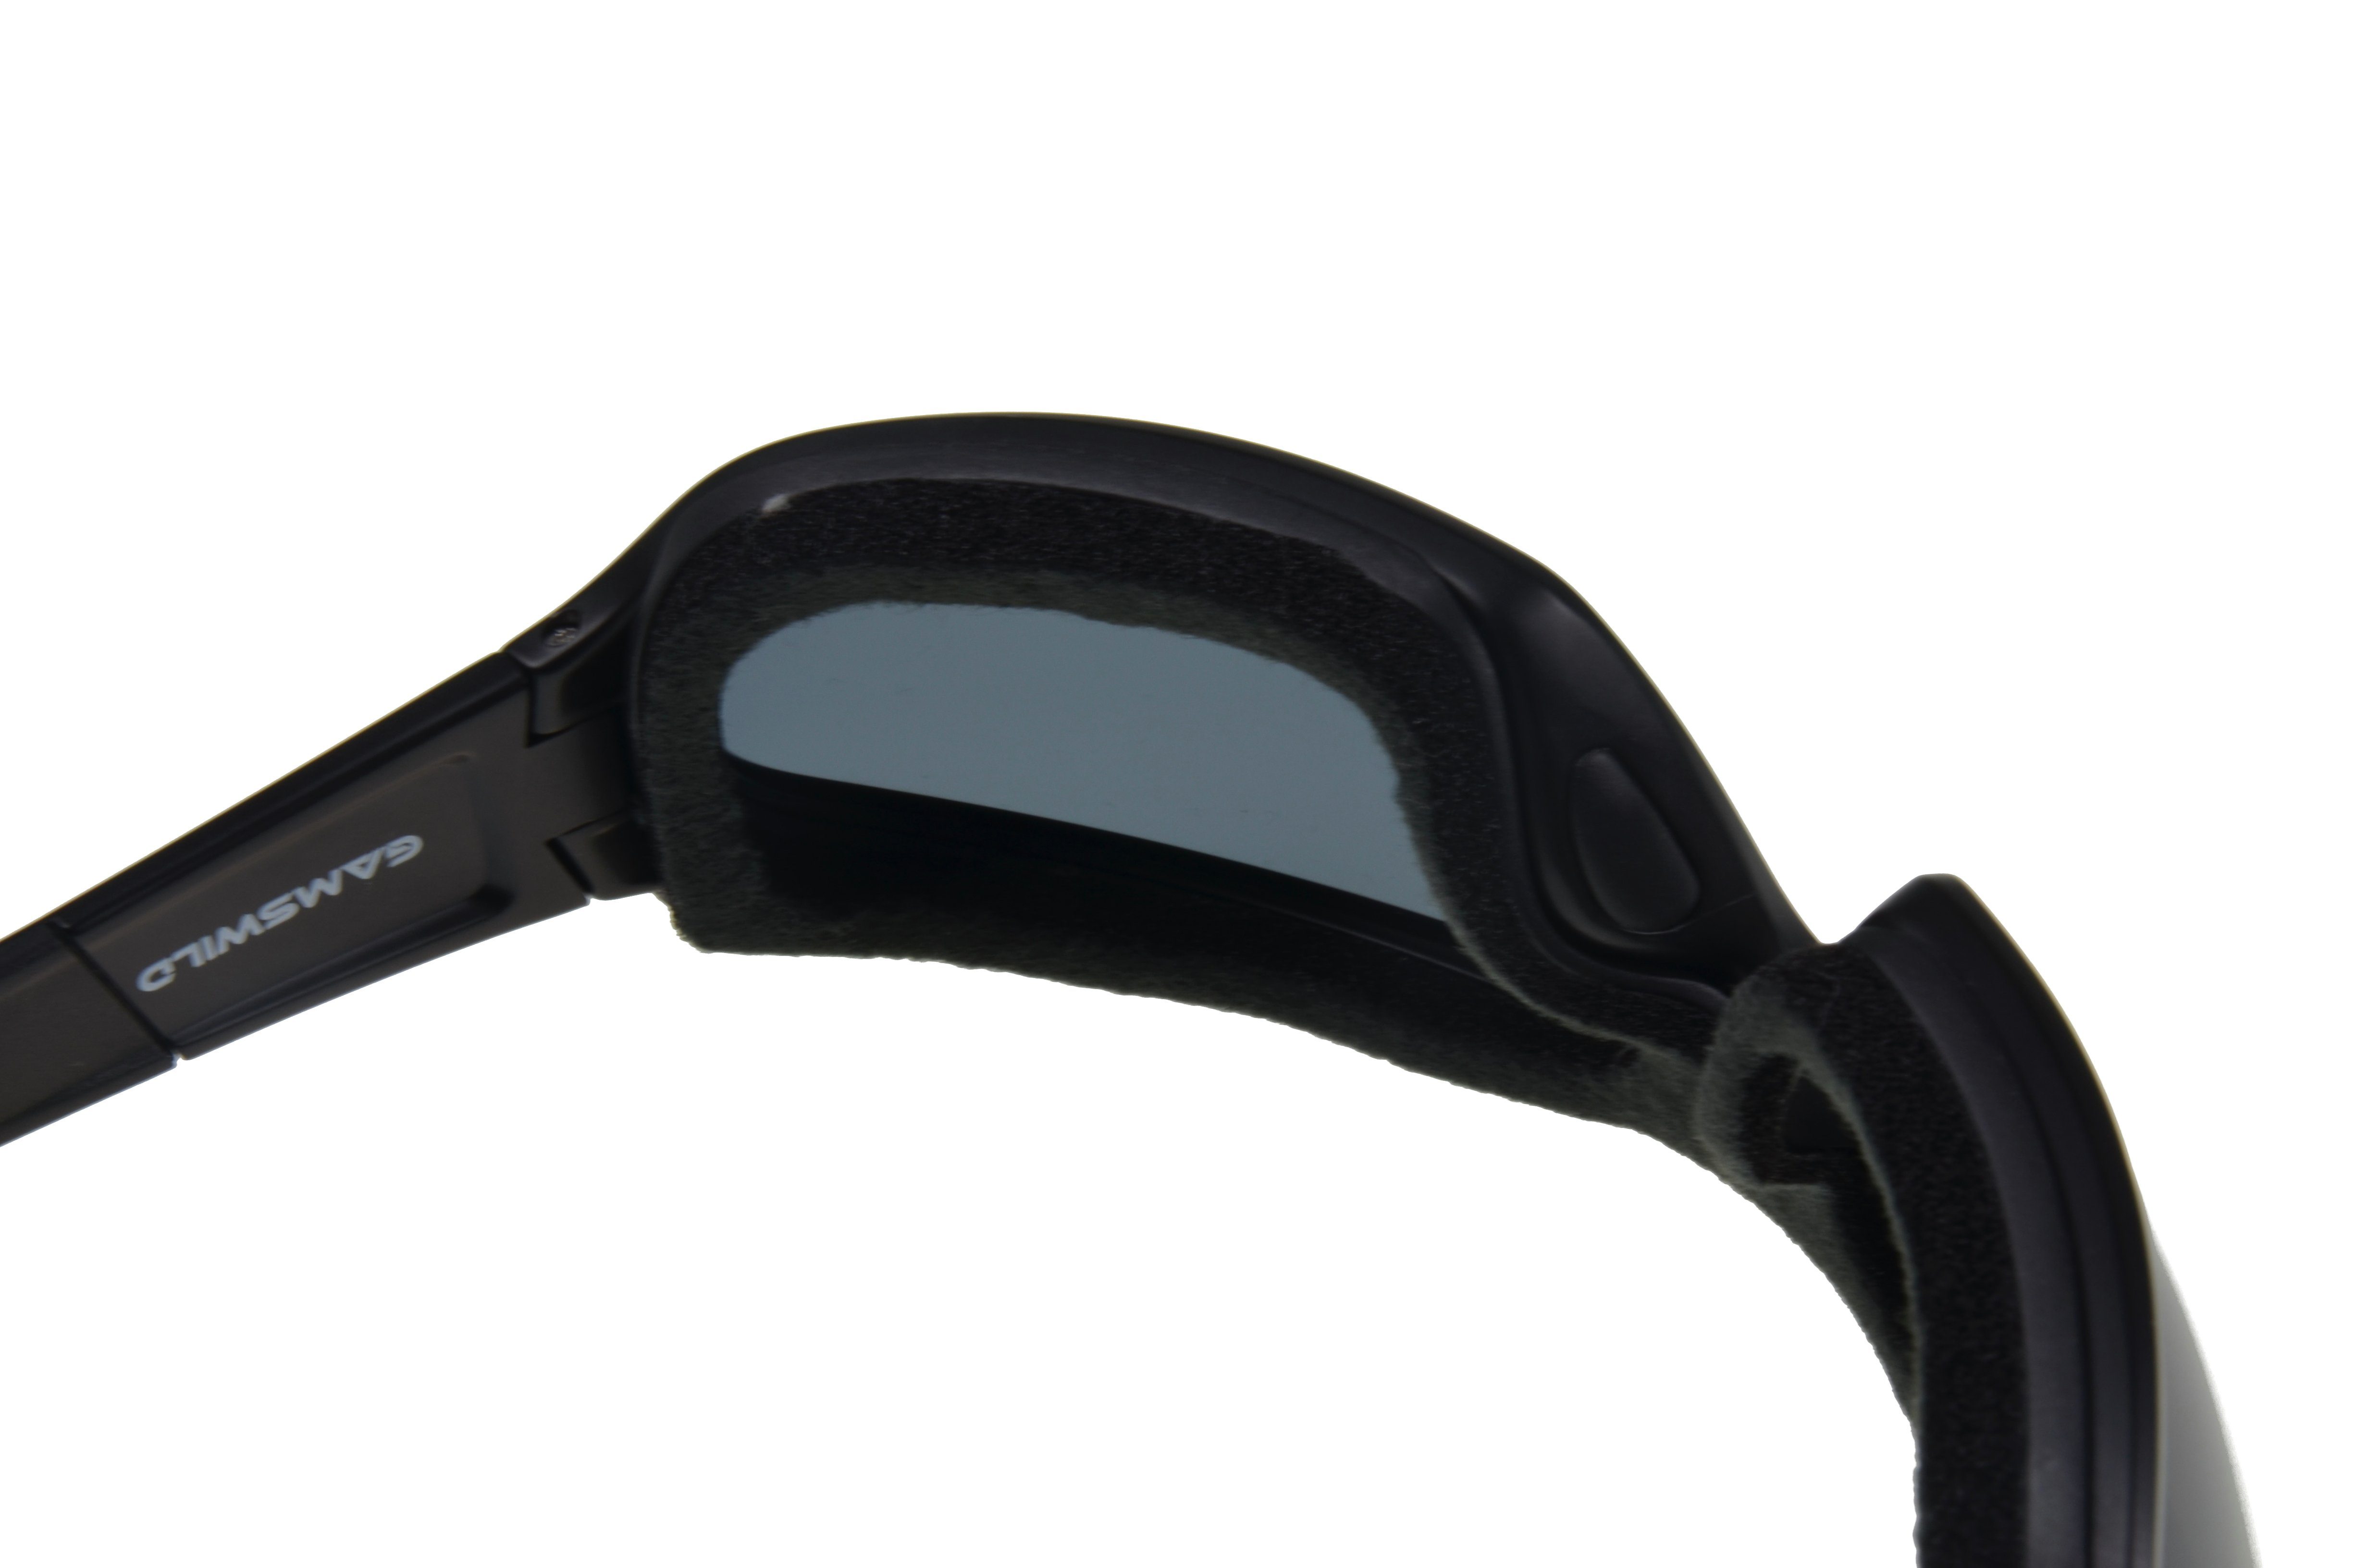 Sport Sportbrillen Gamswild Skibrille WS4734 Skibrille Gletscherbrille Snowboardbrille Sonnenbrille Damen Herren Fahrradbrille U